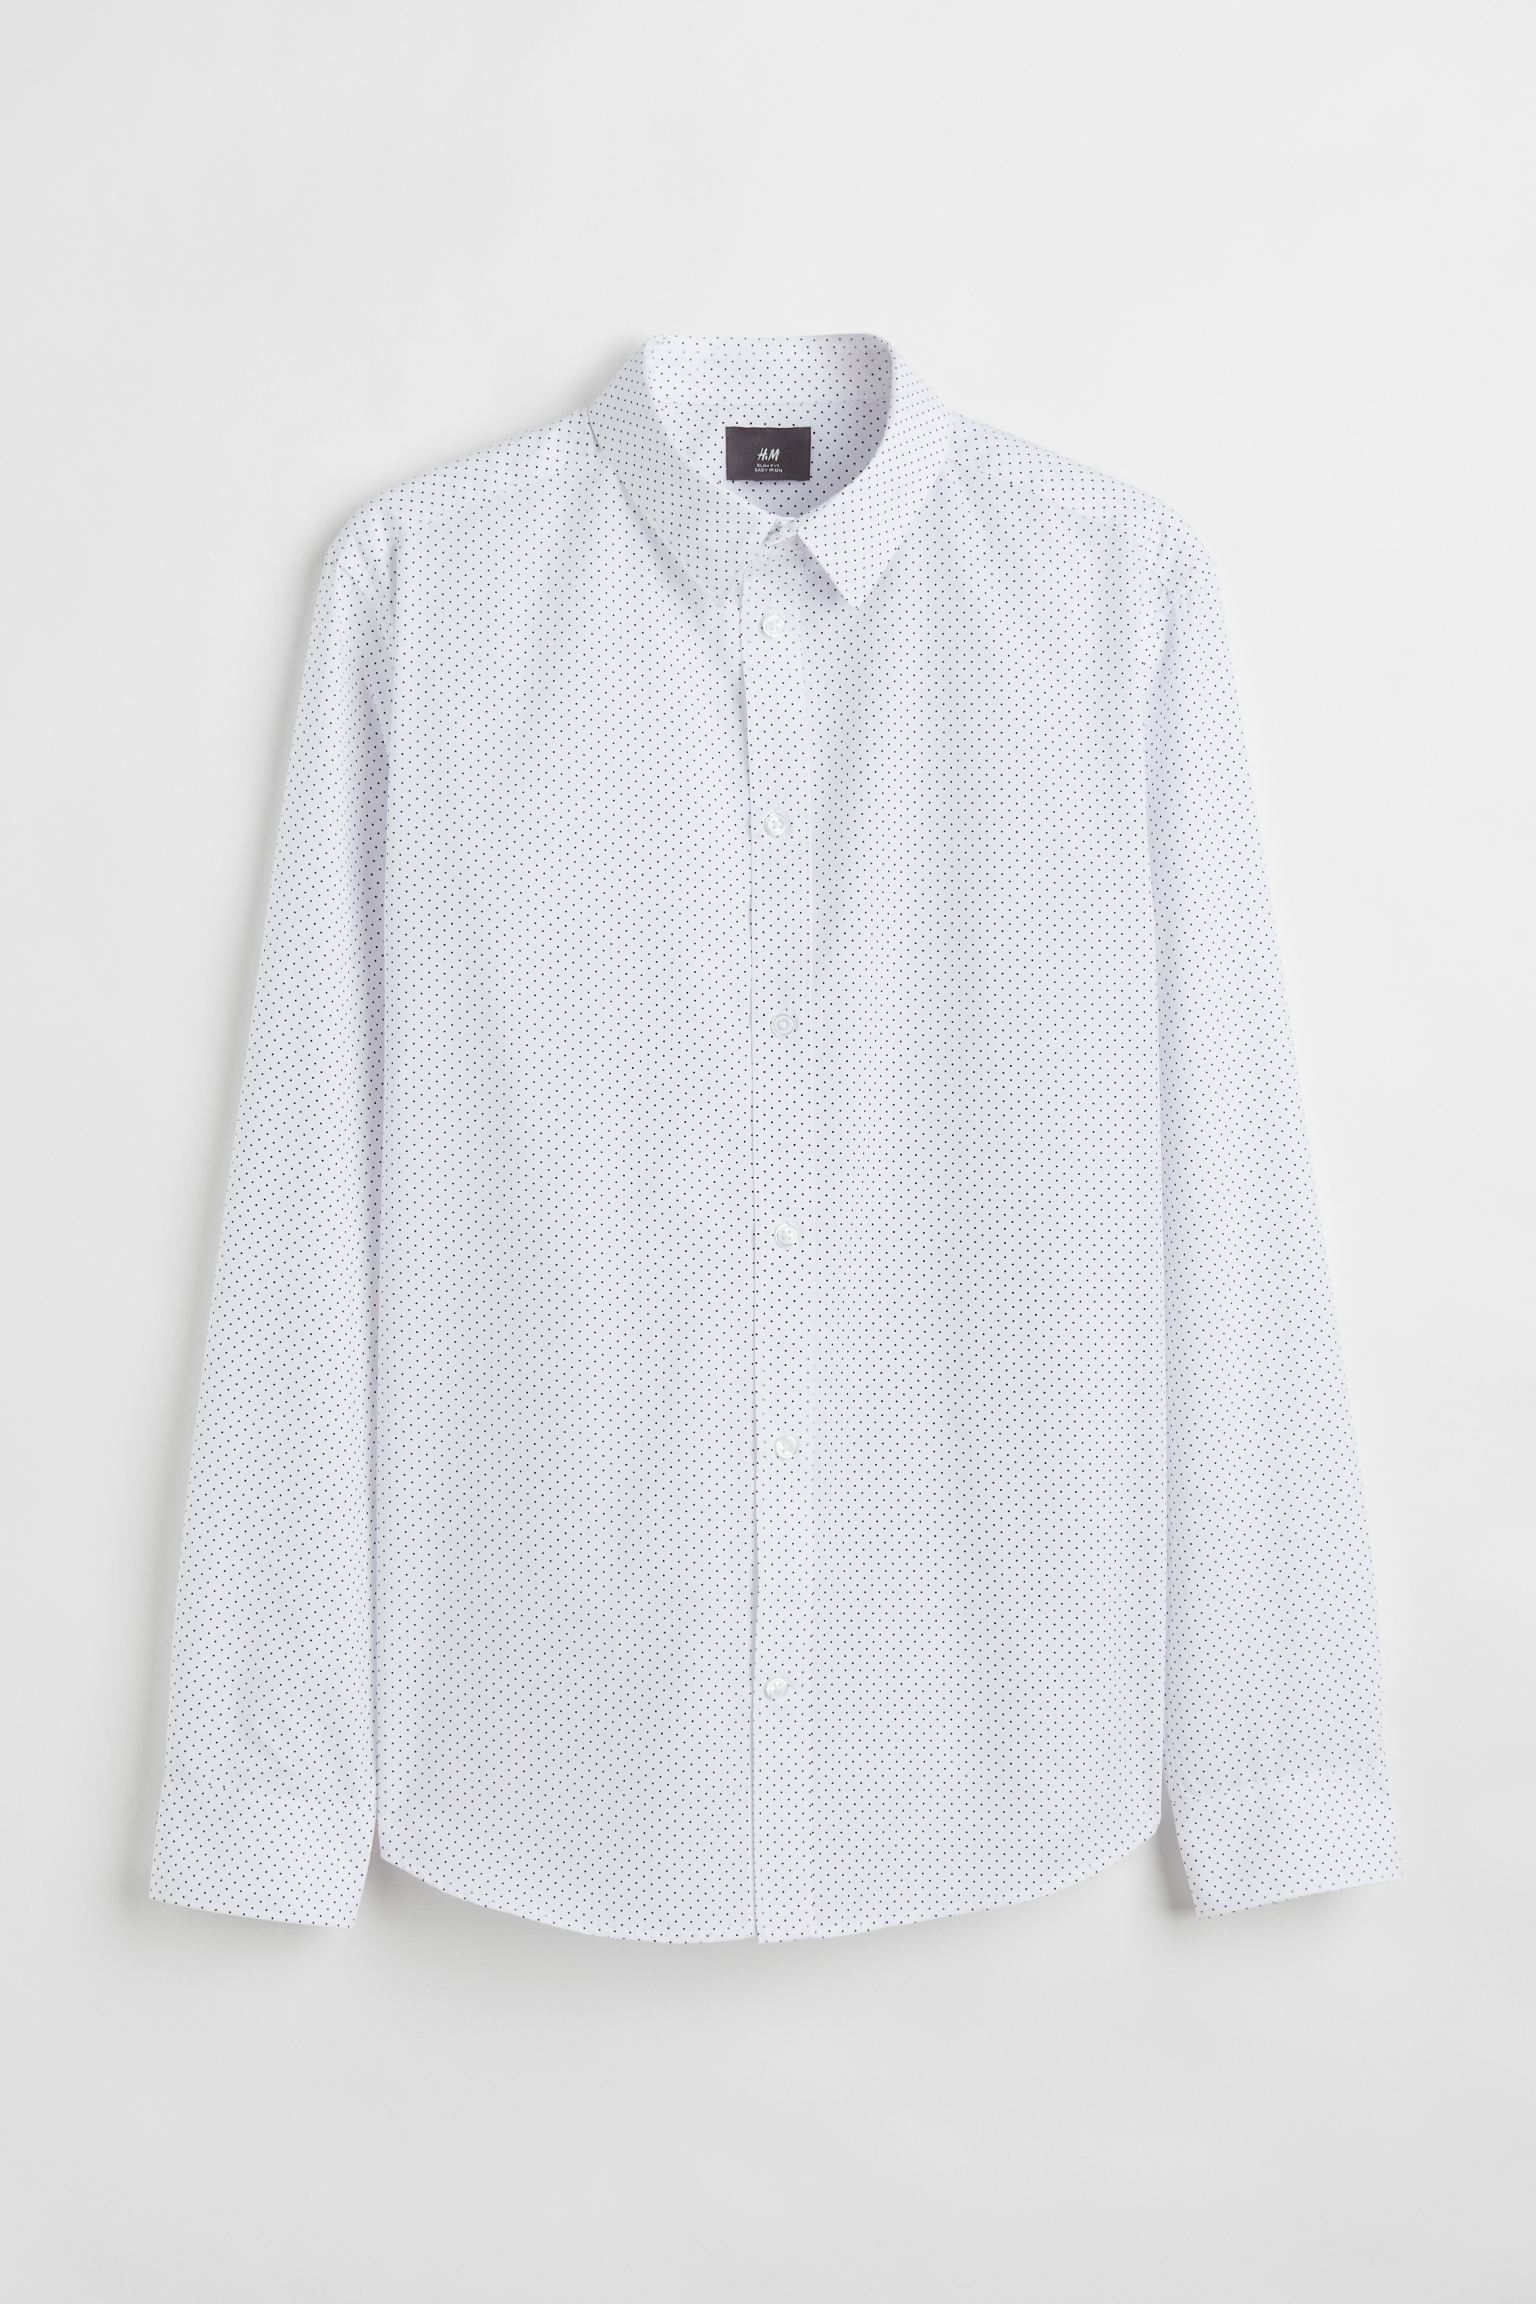 Рубашка мужская H&M 976709002 белая 2XL (доставка из-за рубежа)